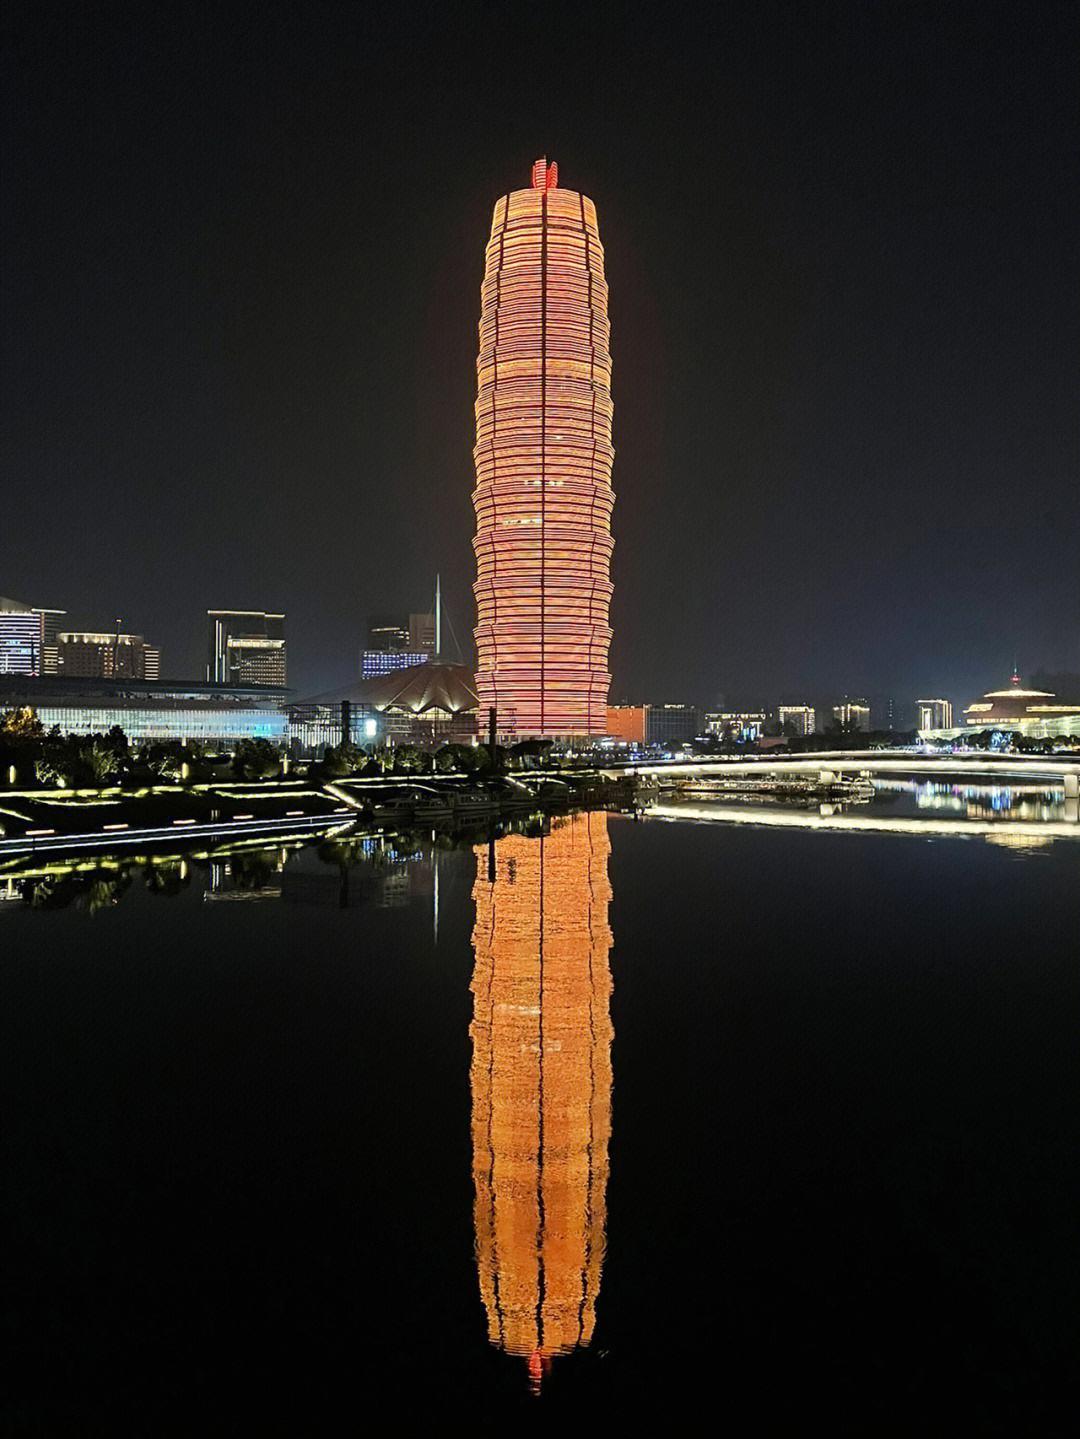 翱翔的大鹏鸟 的想法: 郑州标志性夜景大玉米楼,太美了!